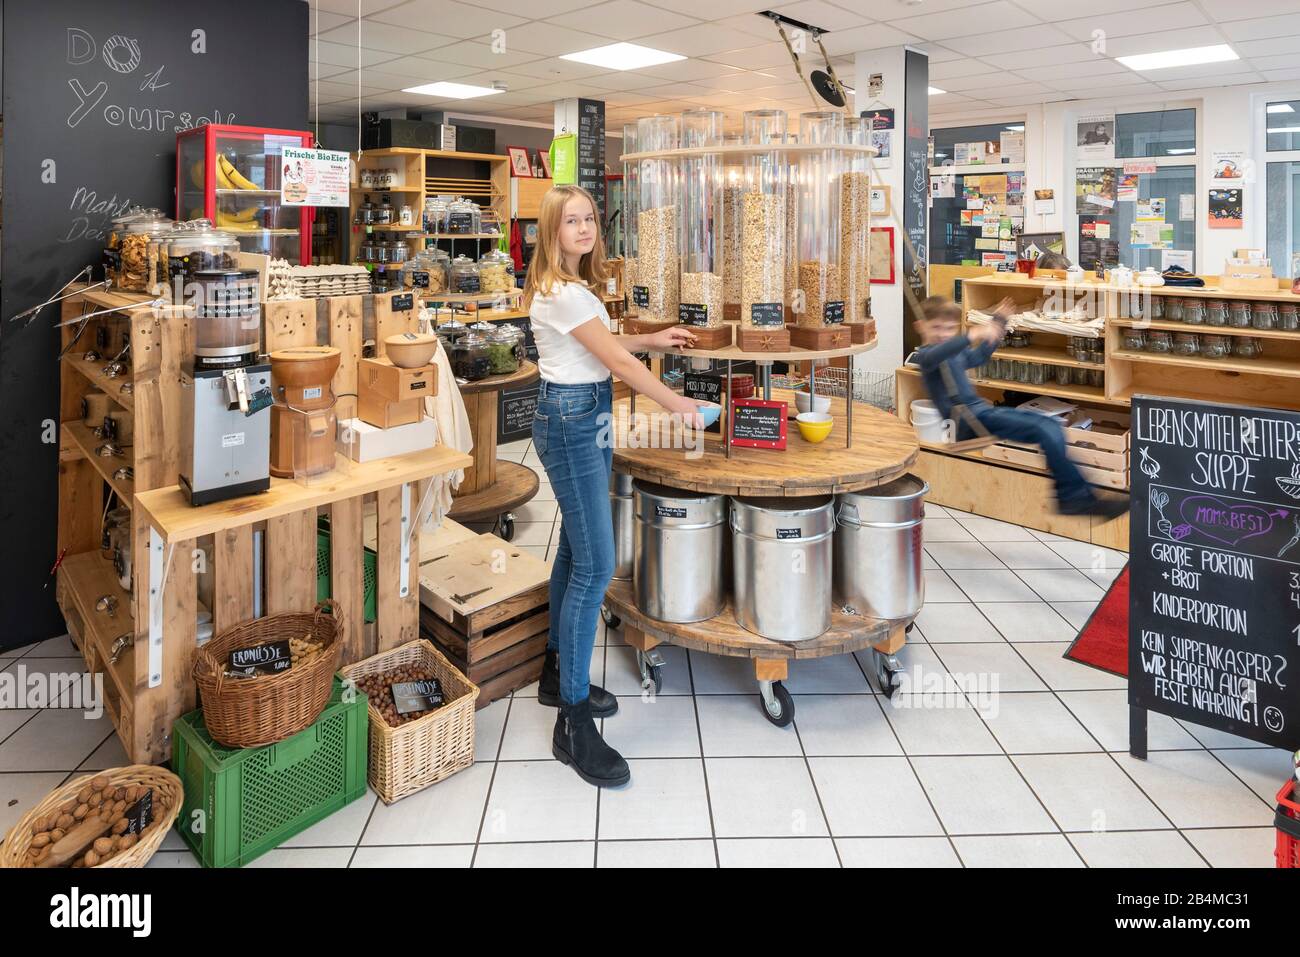 Eine junge Kundin steht vor einem Regal mit Abfüllbehältern für Müsli in einem Unverpacktladen. Rechts daneben schaukelt ein Junge. Szene aus einem Un Stock Photo